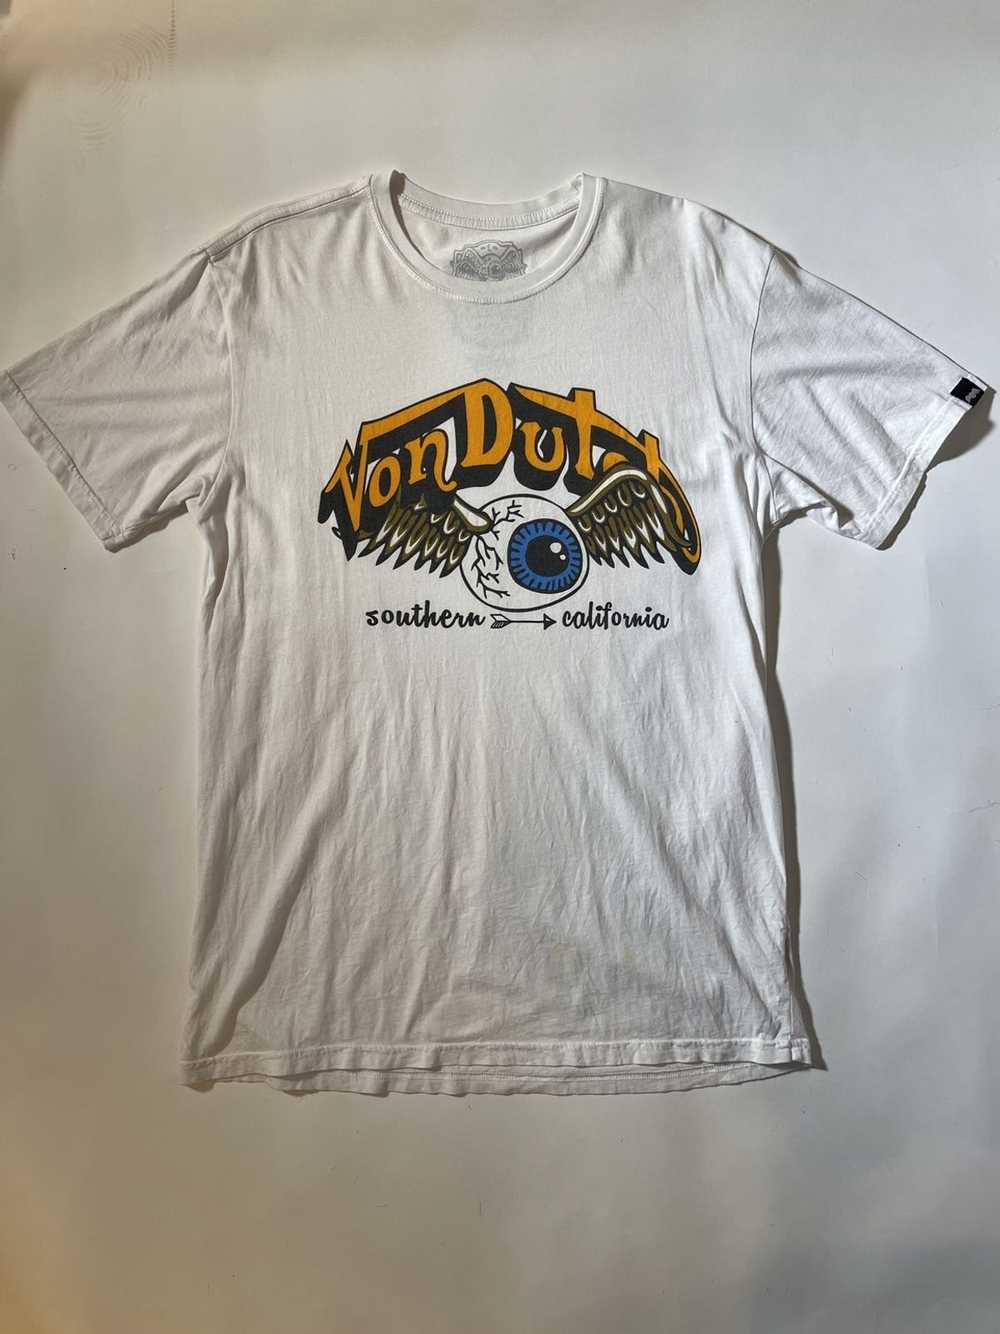 Von Dutch von dutch t shirt / white / size large - image 1